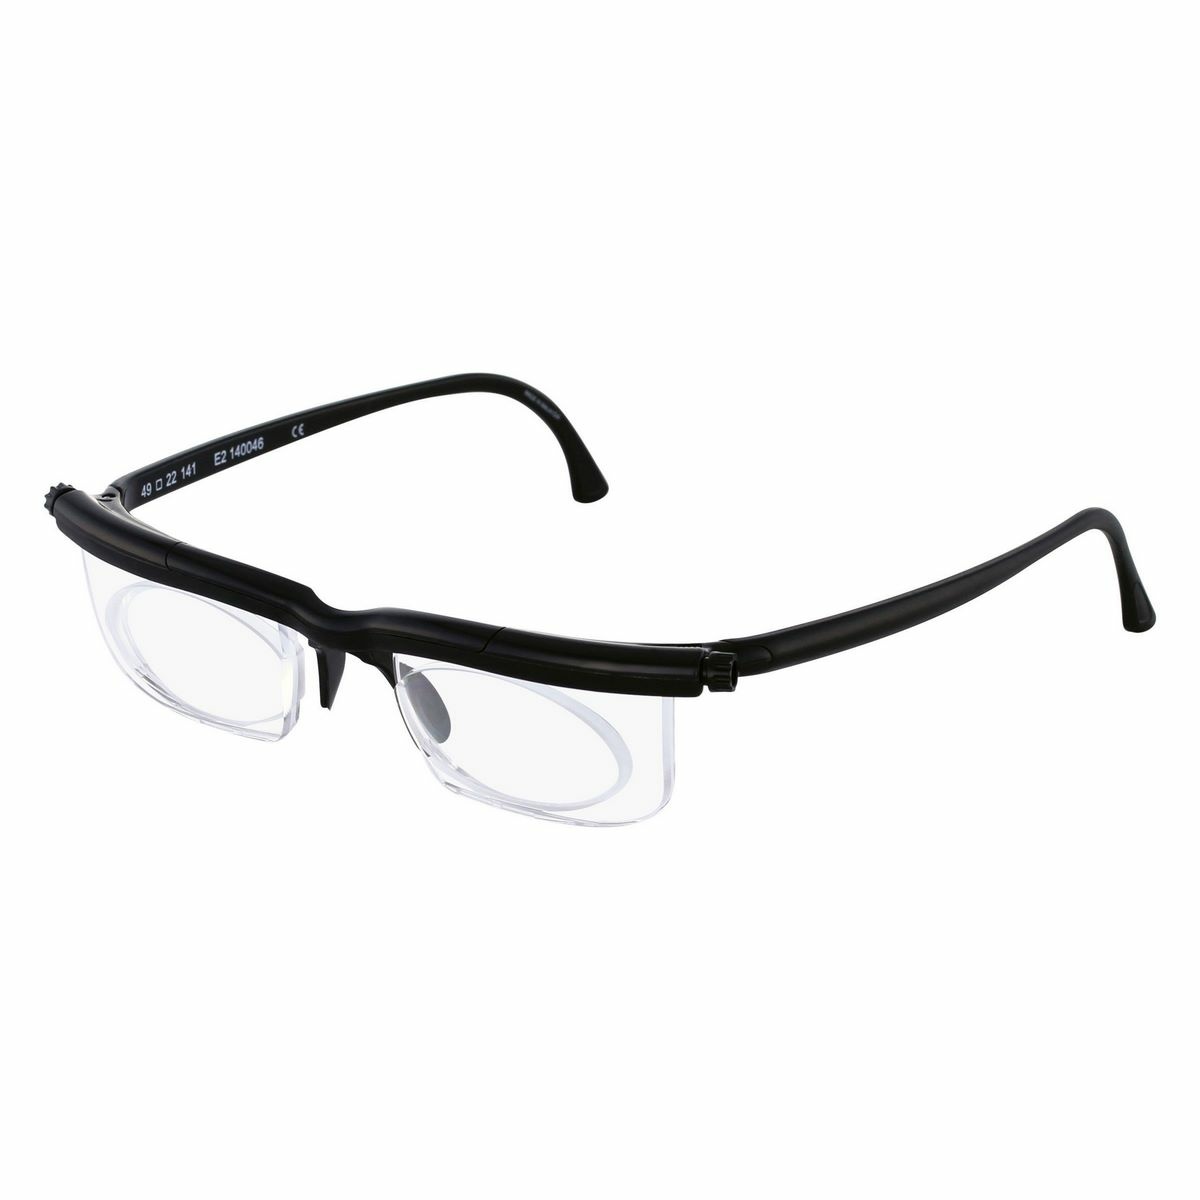 Nastavitelné dioptrické brýle Adlens, černá